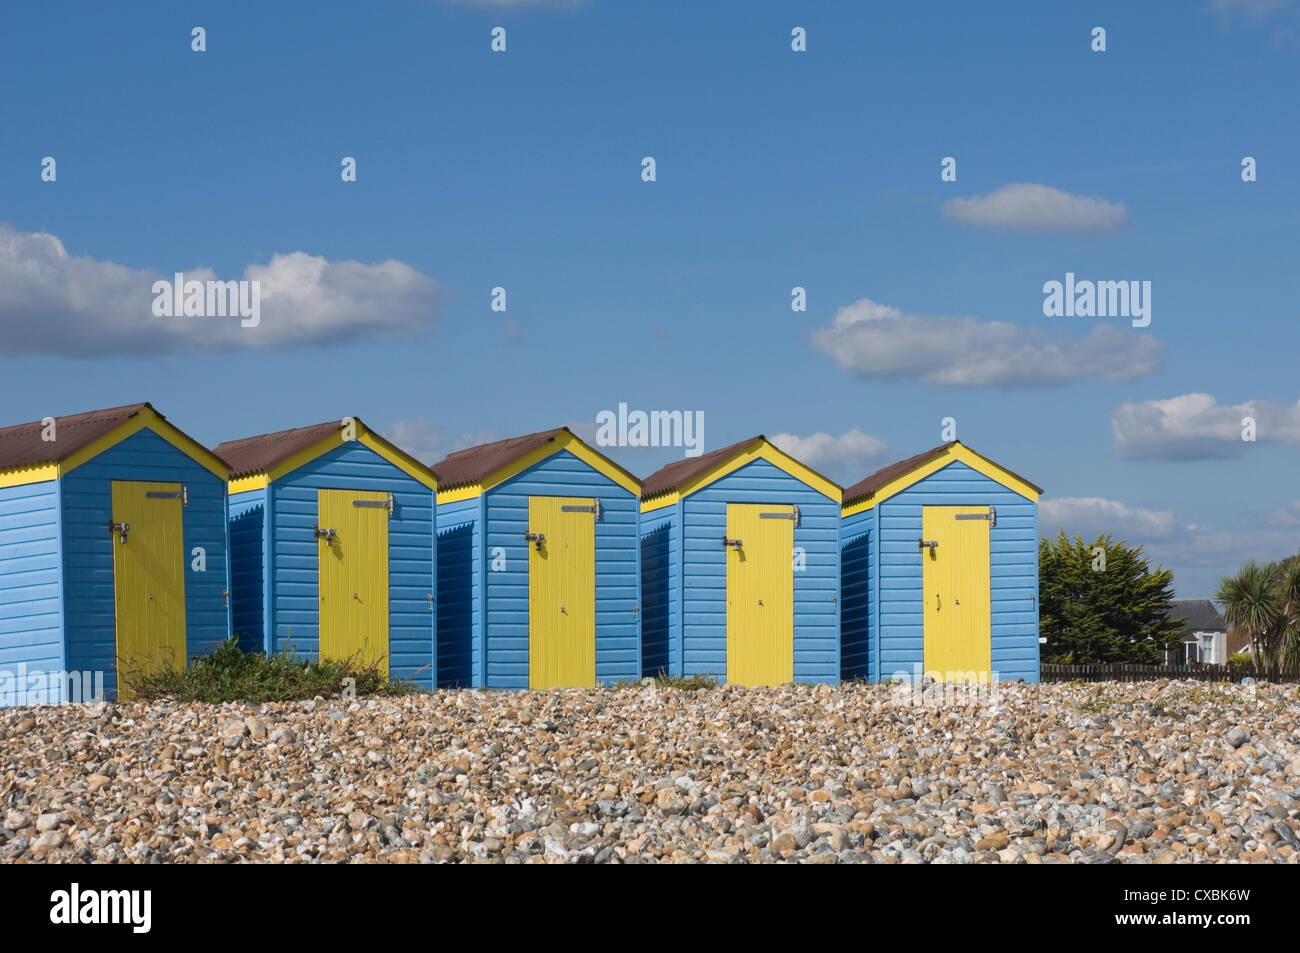 Cinq cabines de plage bleu avec des portes jaunes, Littlehampton, West Sussex, Angleterre, Royaume-Uni, Europe Banque D'Images